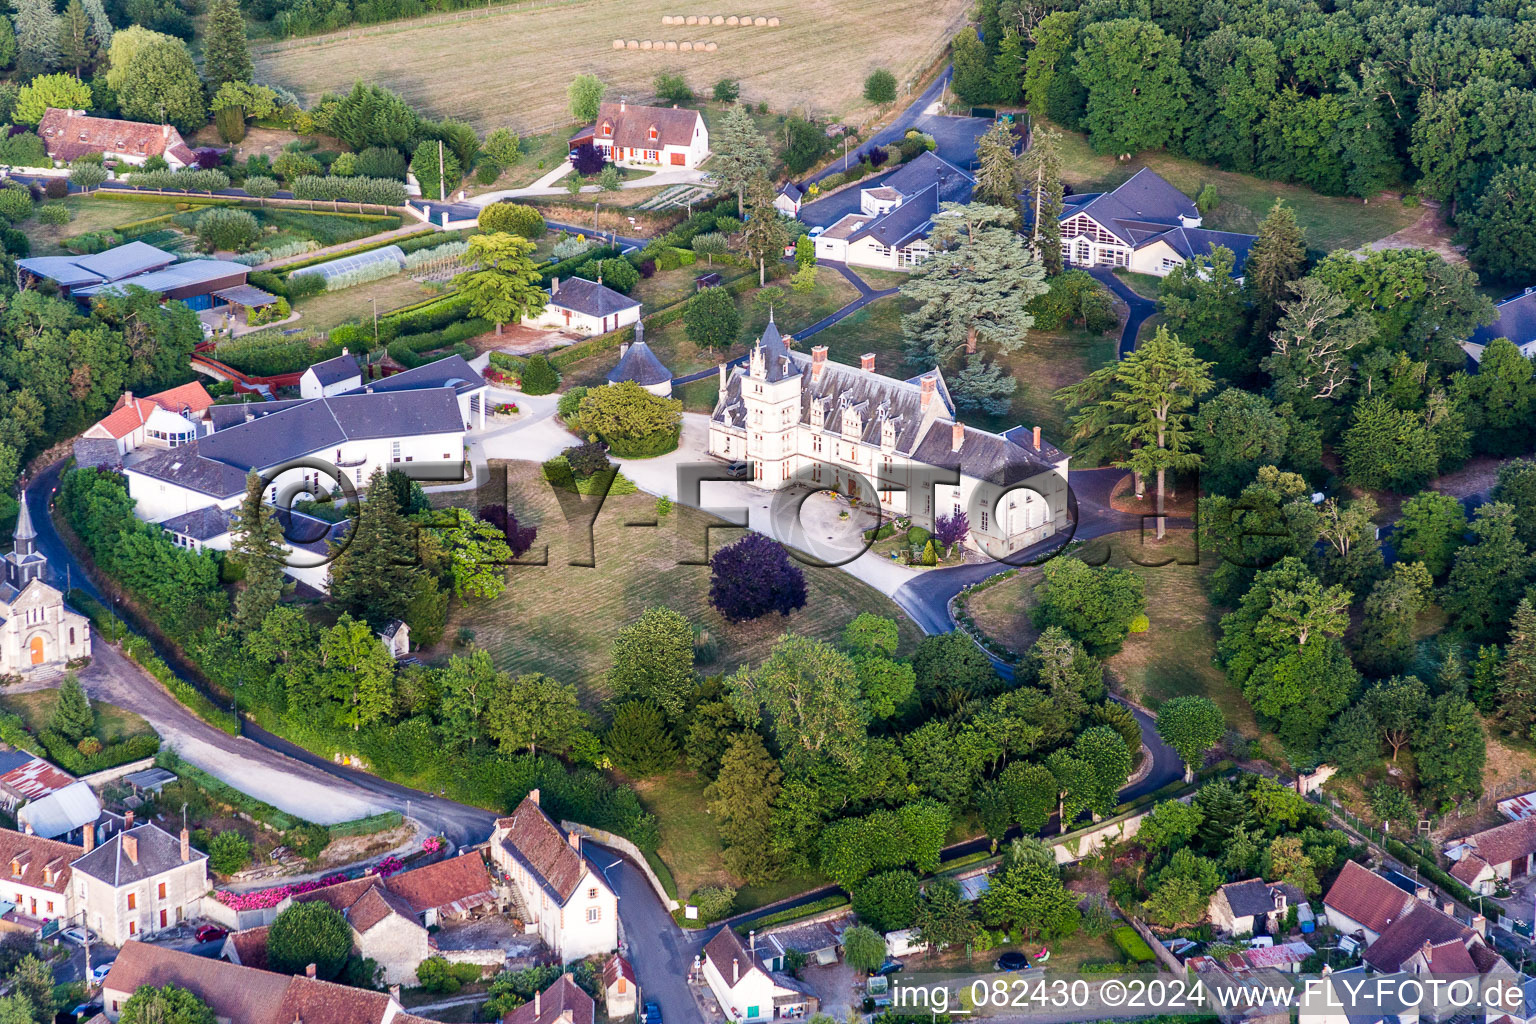 Building complex in the park of the castle C.A.S Dessaignes, Centre d'Accueil et de Soins du CDSAE Val de Loire in Rilly-sur-Loire in Centre-Val de Loire, France